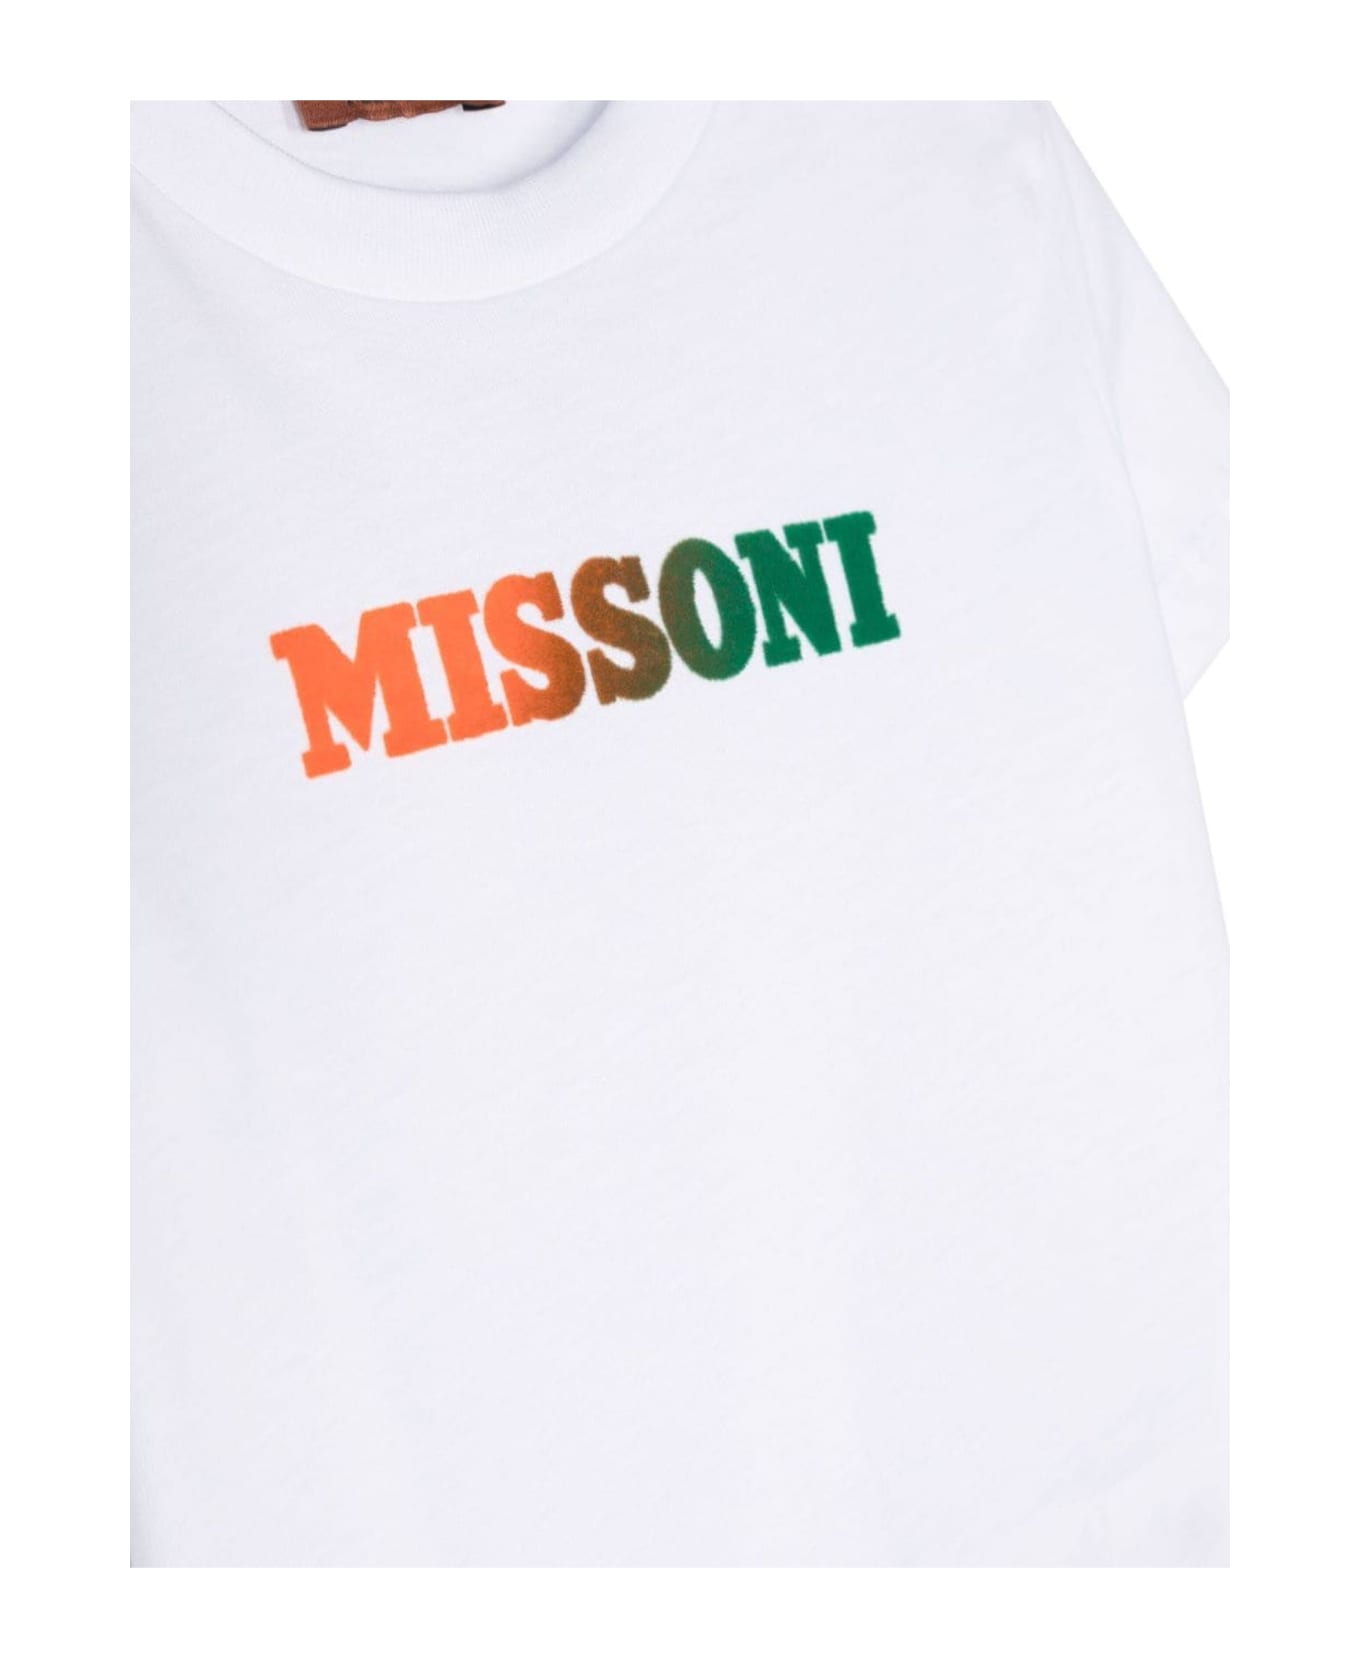 Missoni Kids White Cotton T-shirt - Bianco